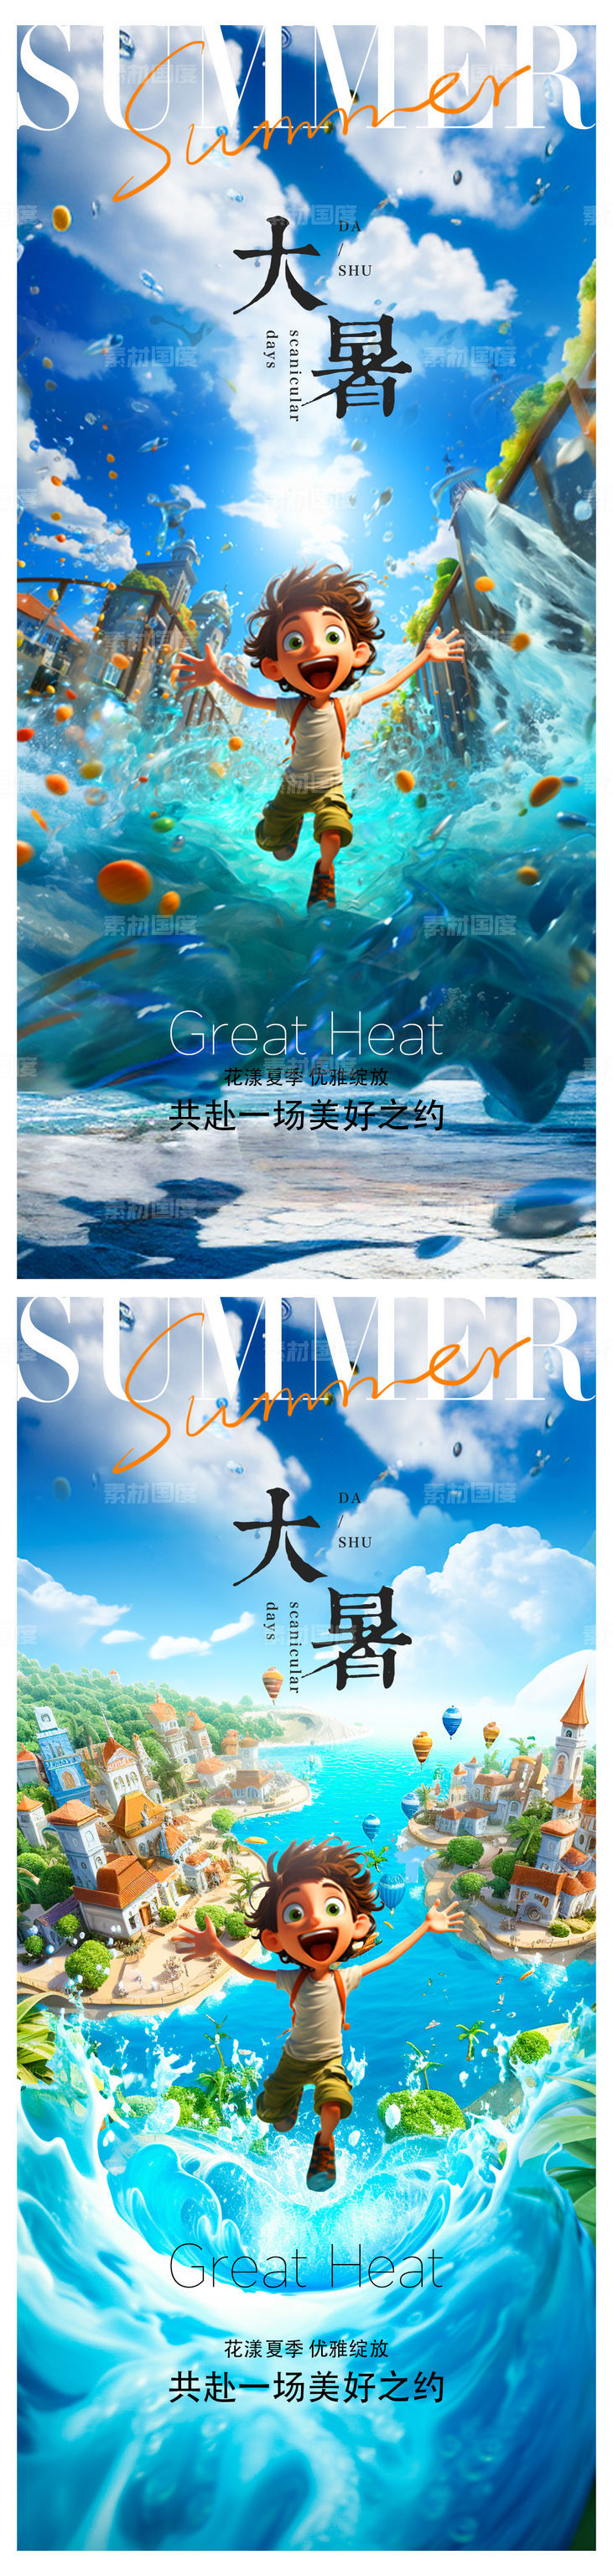 夏至小暑大暑儿童节海报